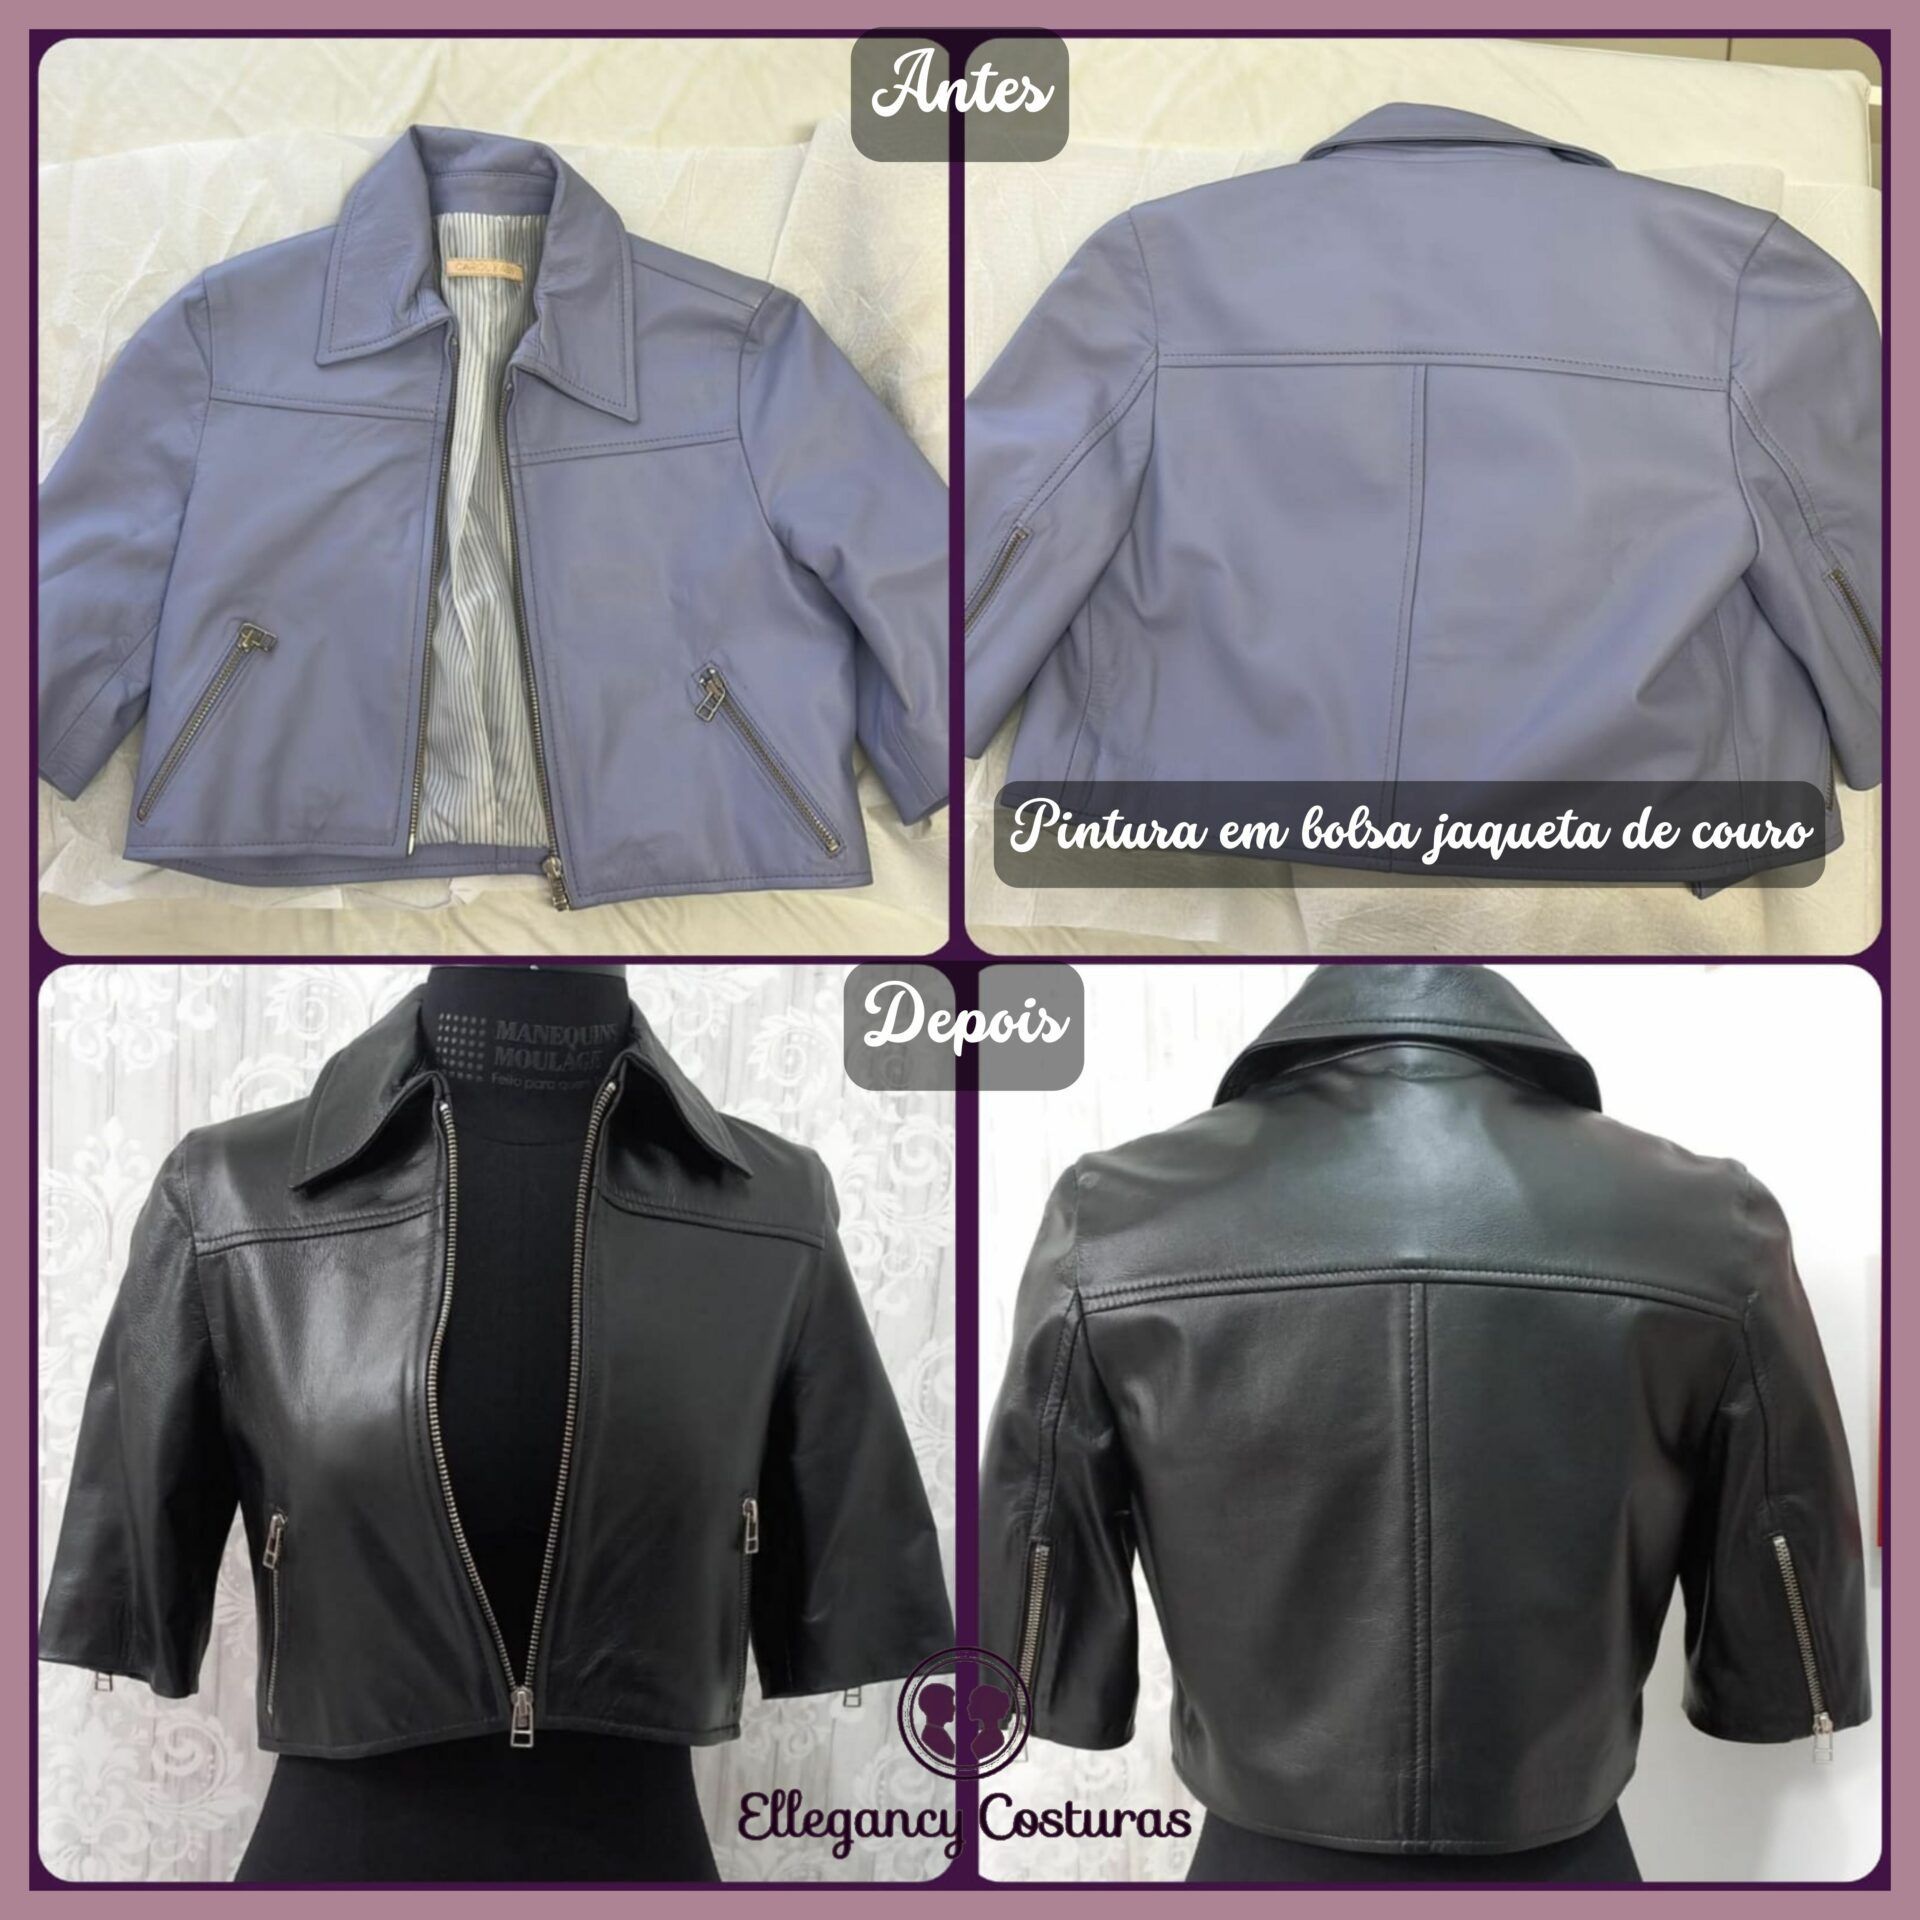 pintura em jaqueta de couro antes e depois na ellegancy costuras